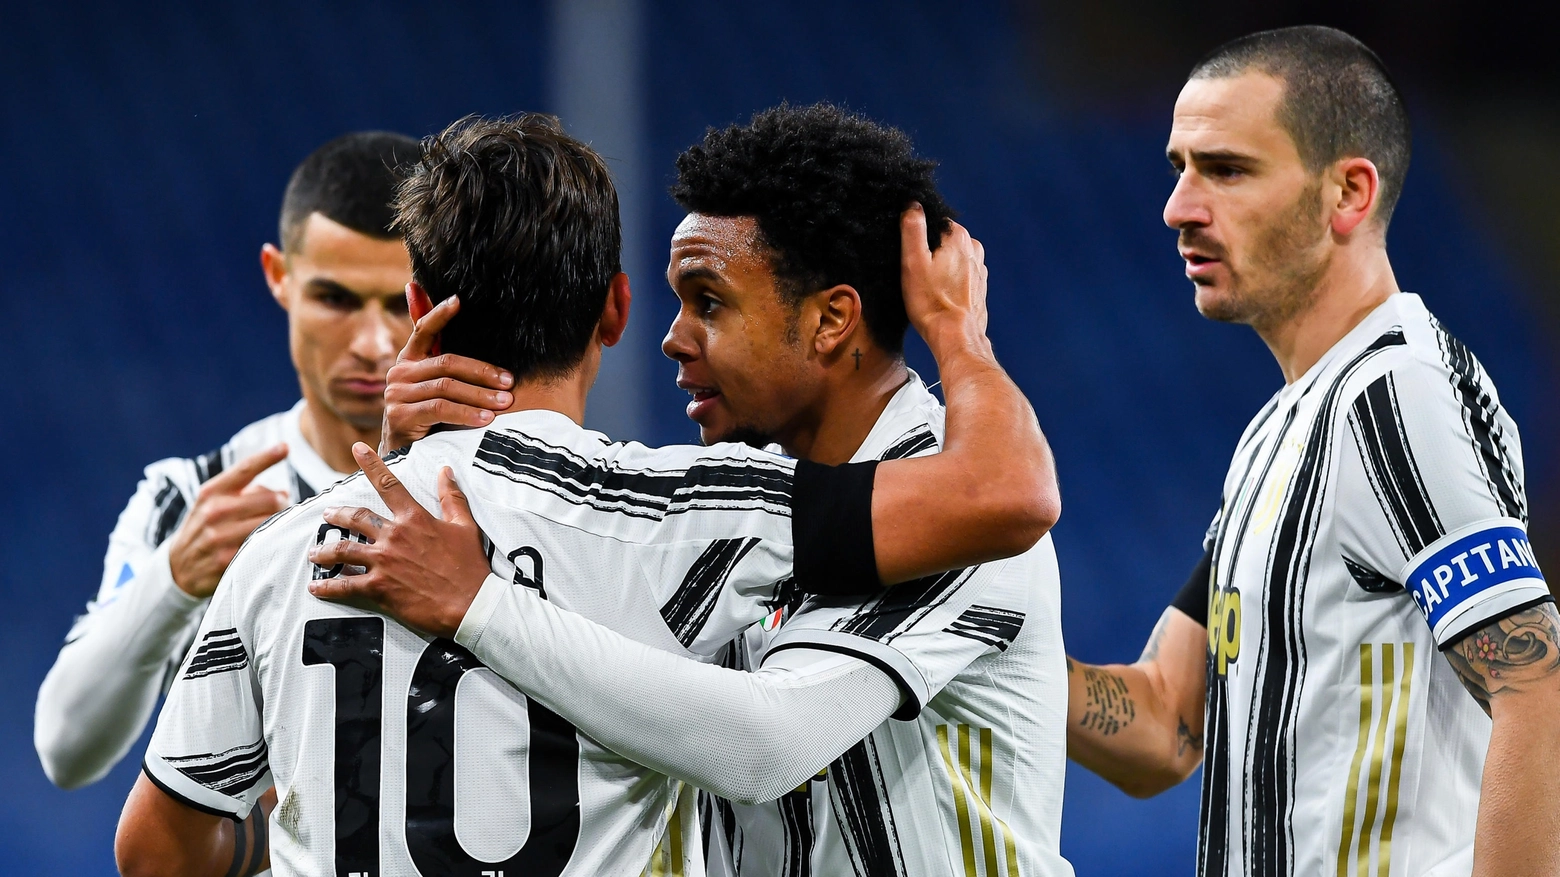 La Juventus di Andrea Pirlo spera di accorciare ulteriormente dal Milan capolista